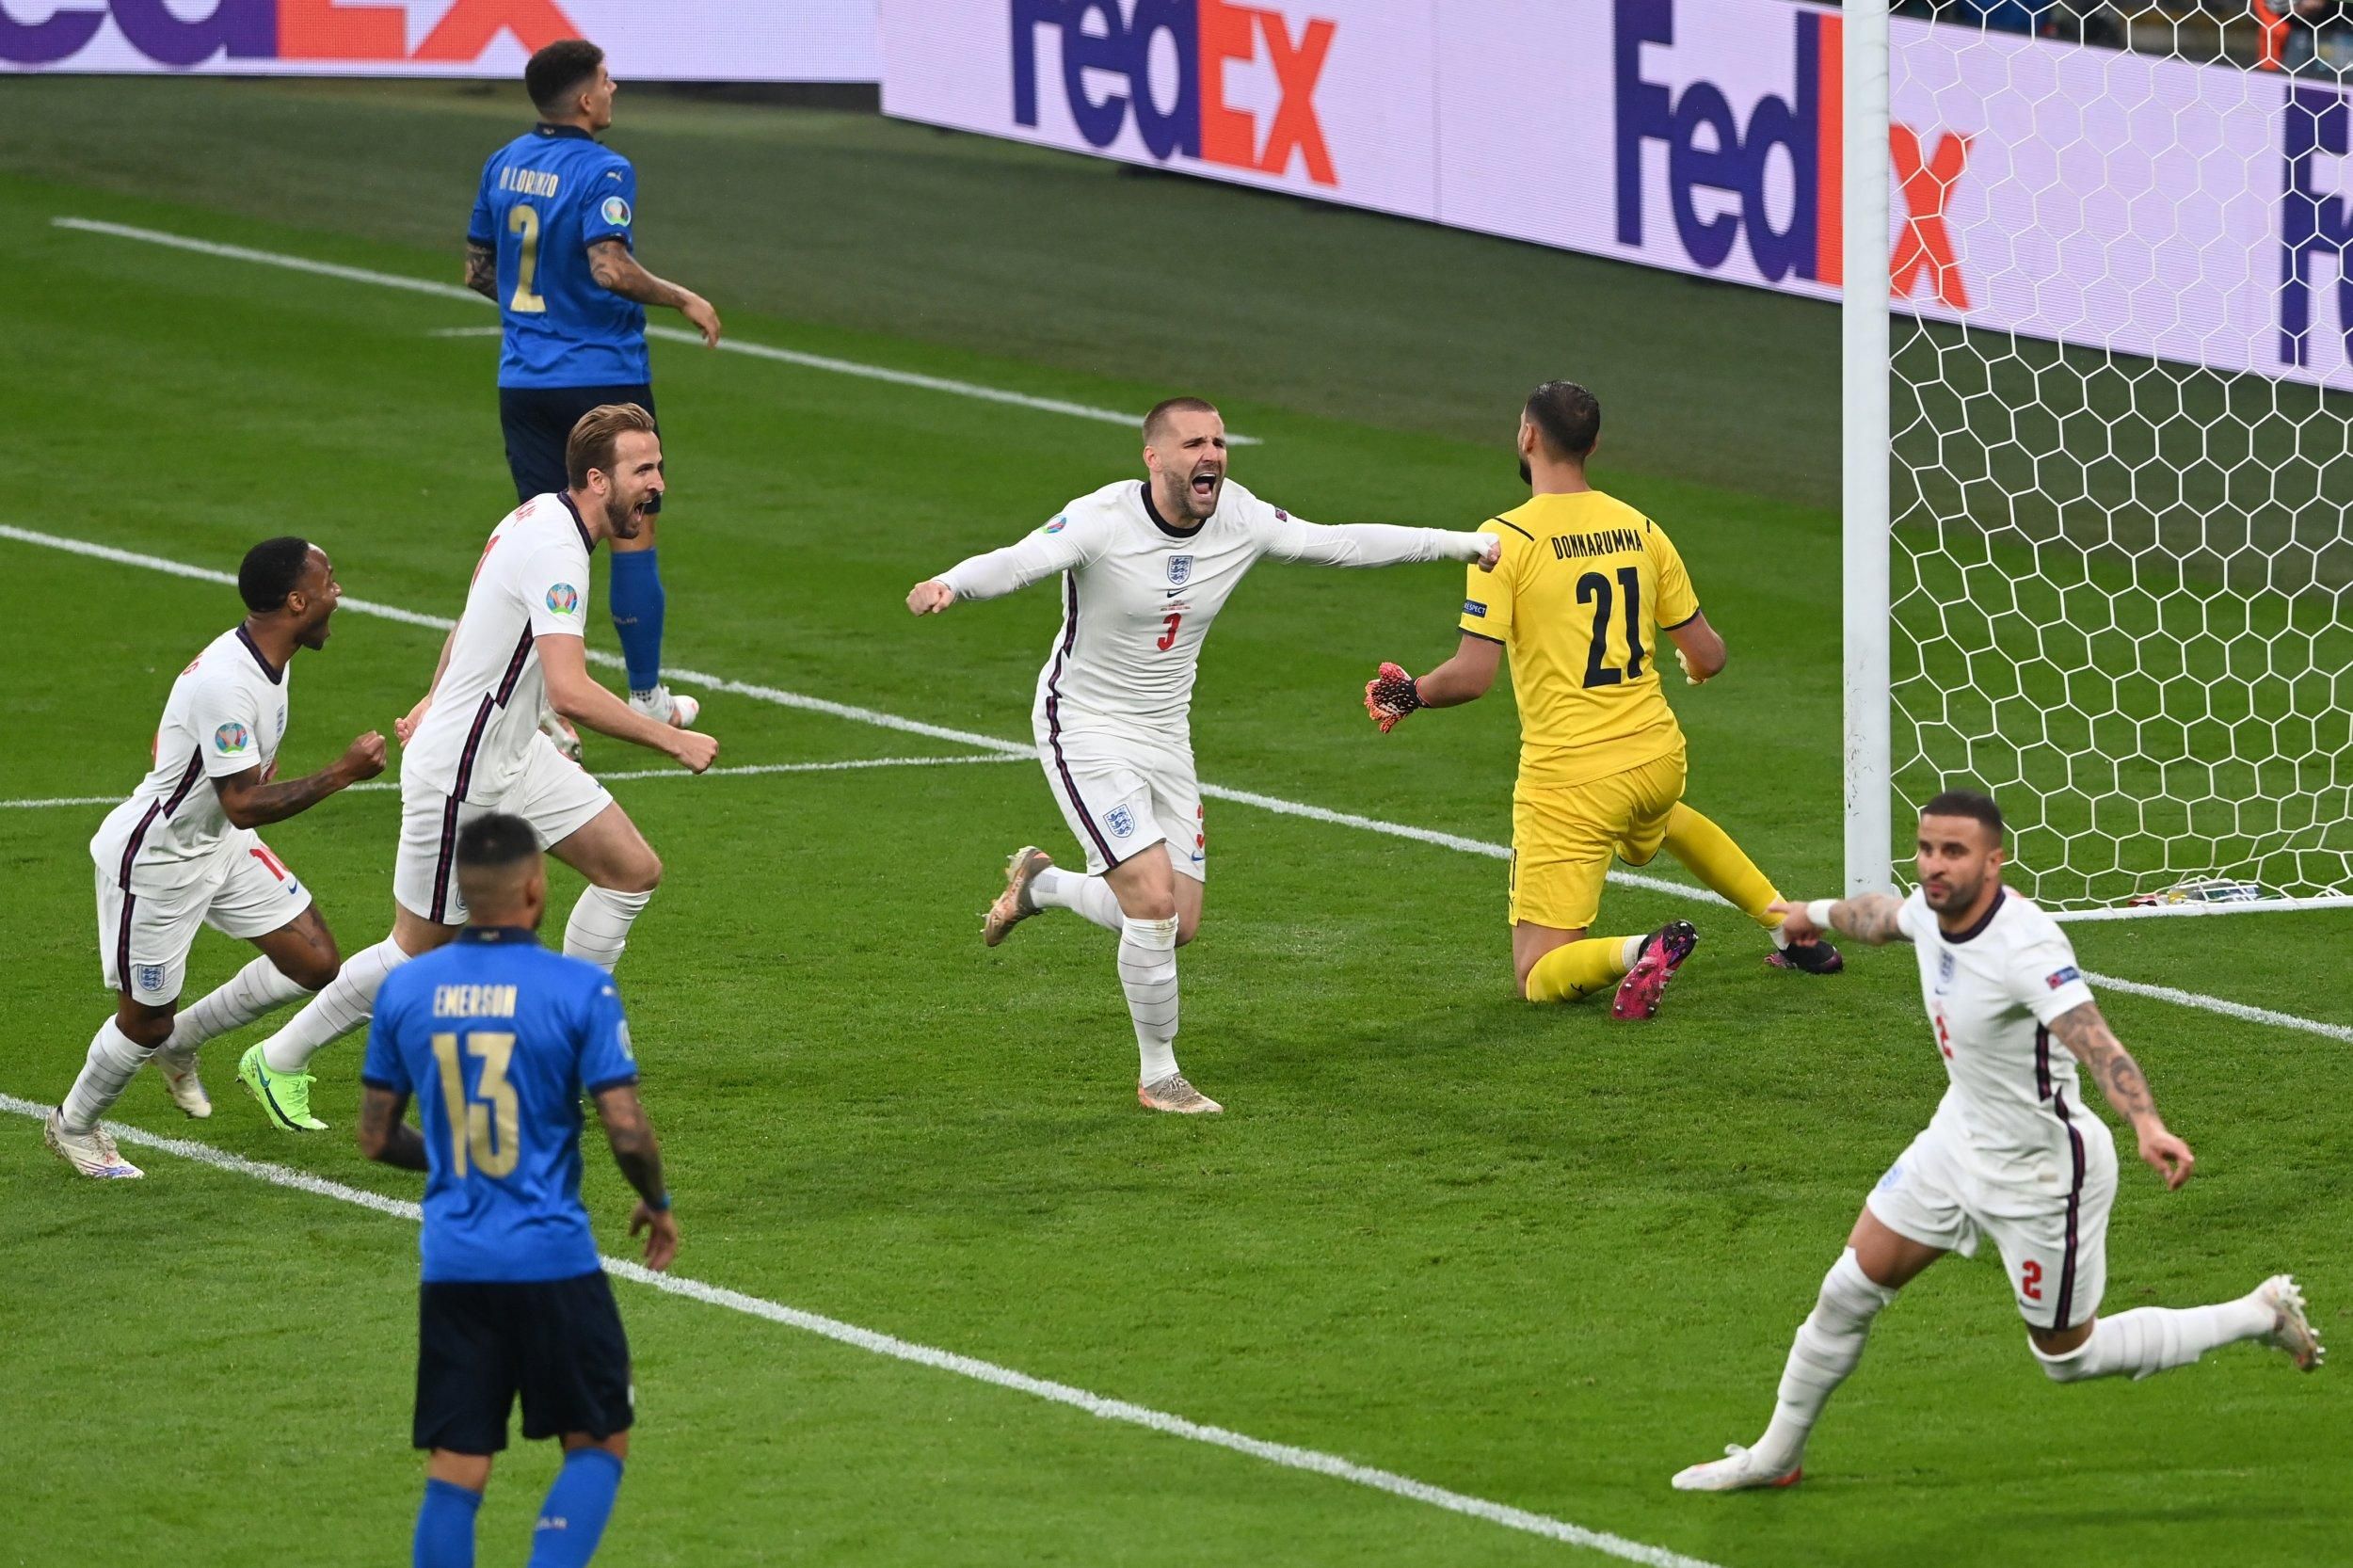 Италия и Англия встречались в последнем финале Евро